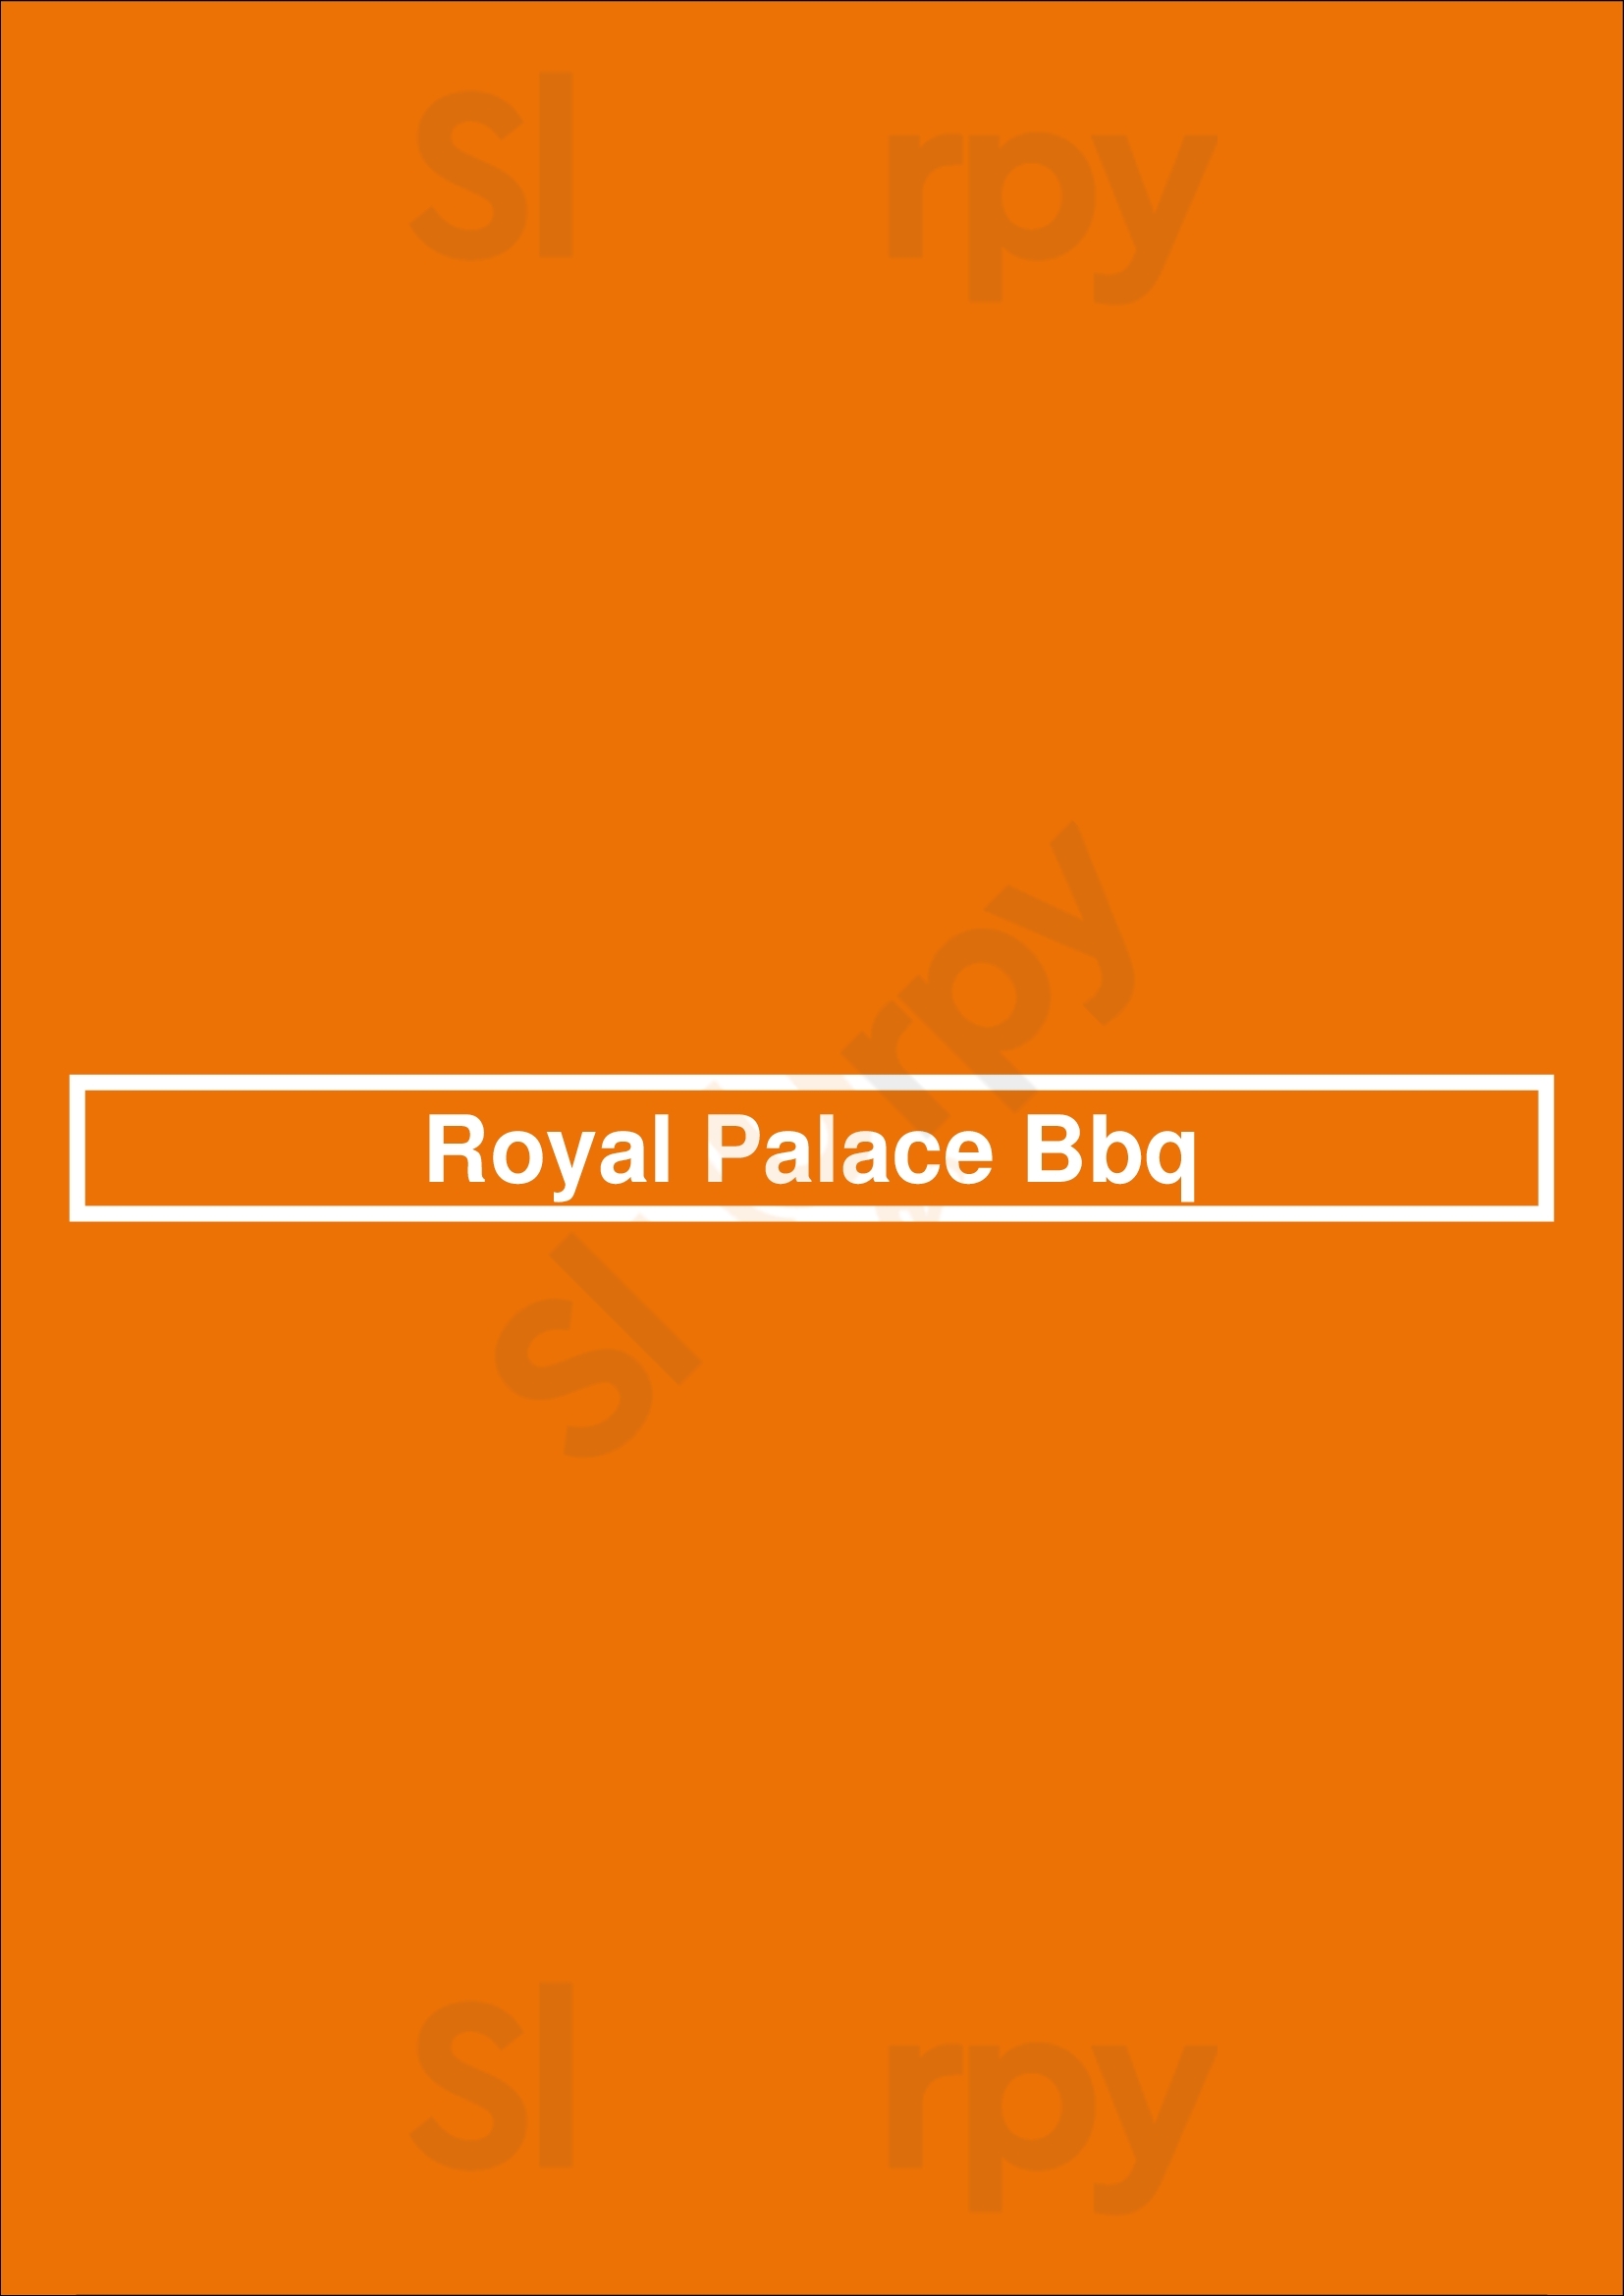 Royal Palace Bbq Dallas Menu - 1